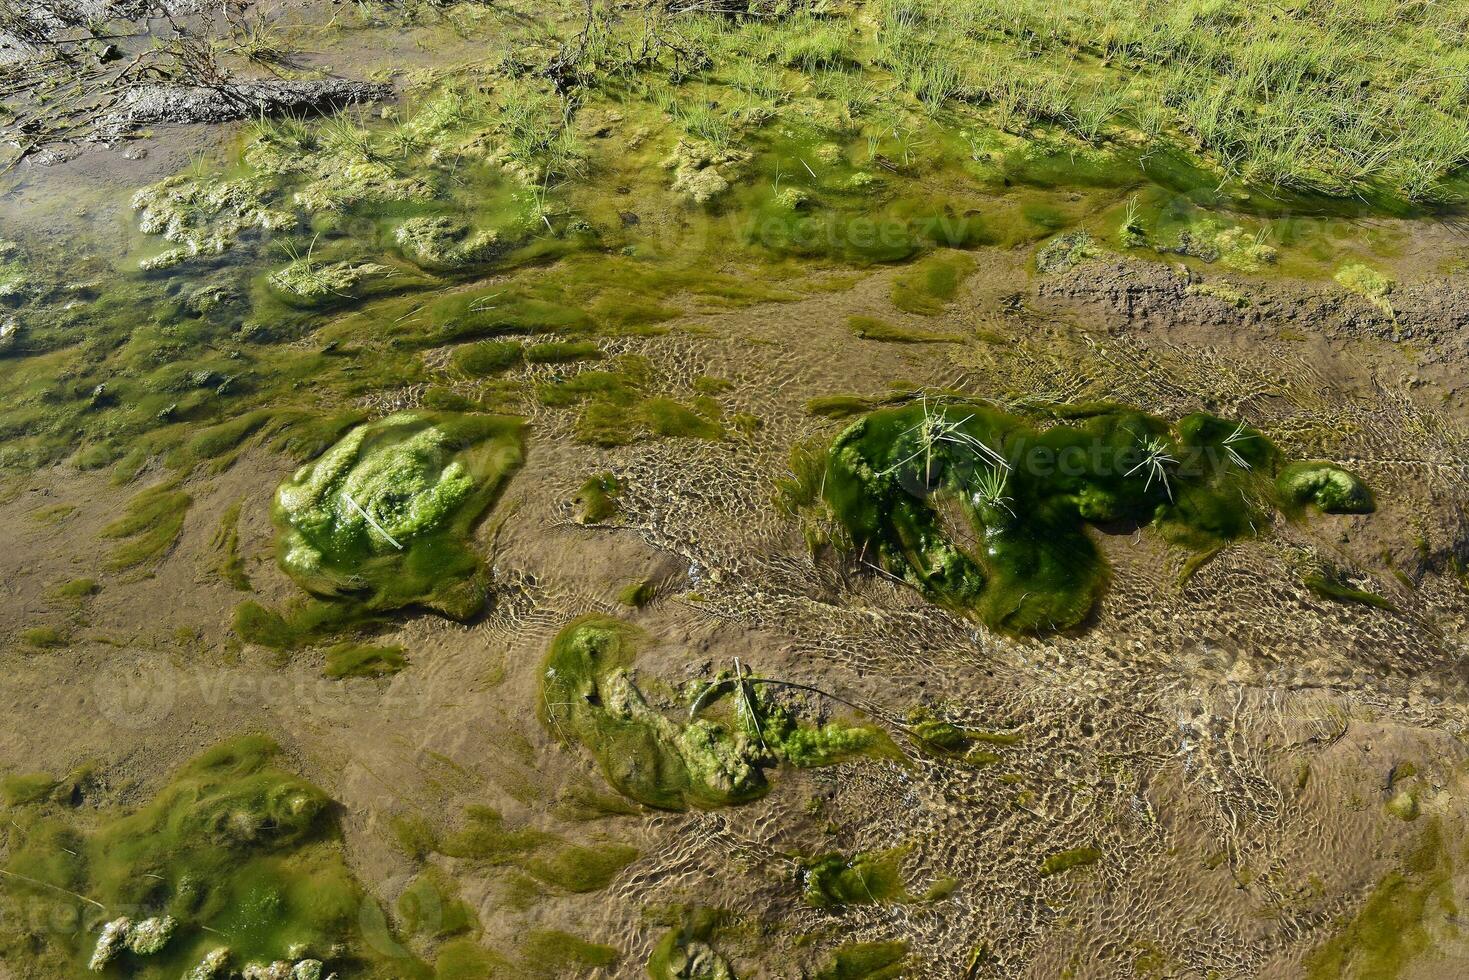 Green algae in aquatic environment , Patagonia, Argentina. photo